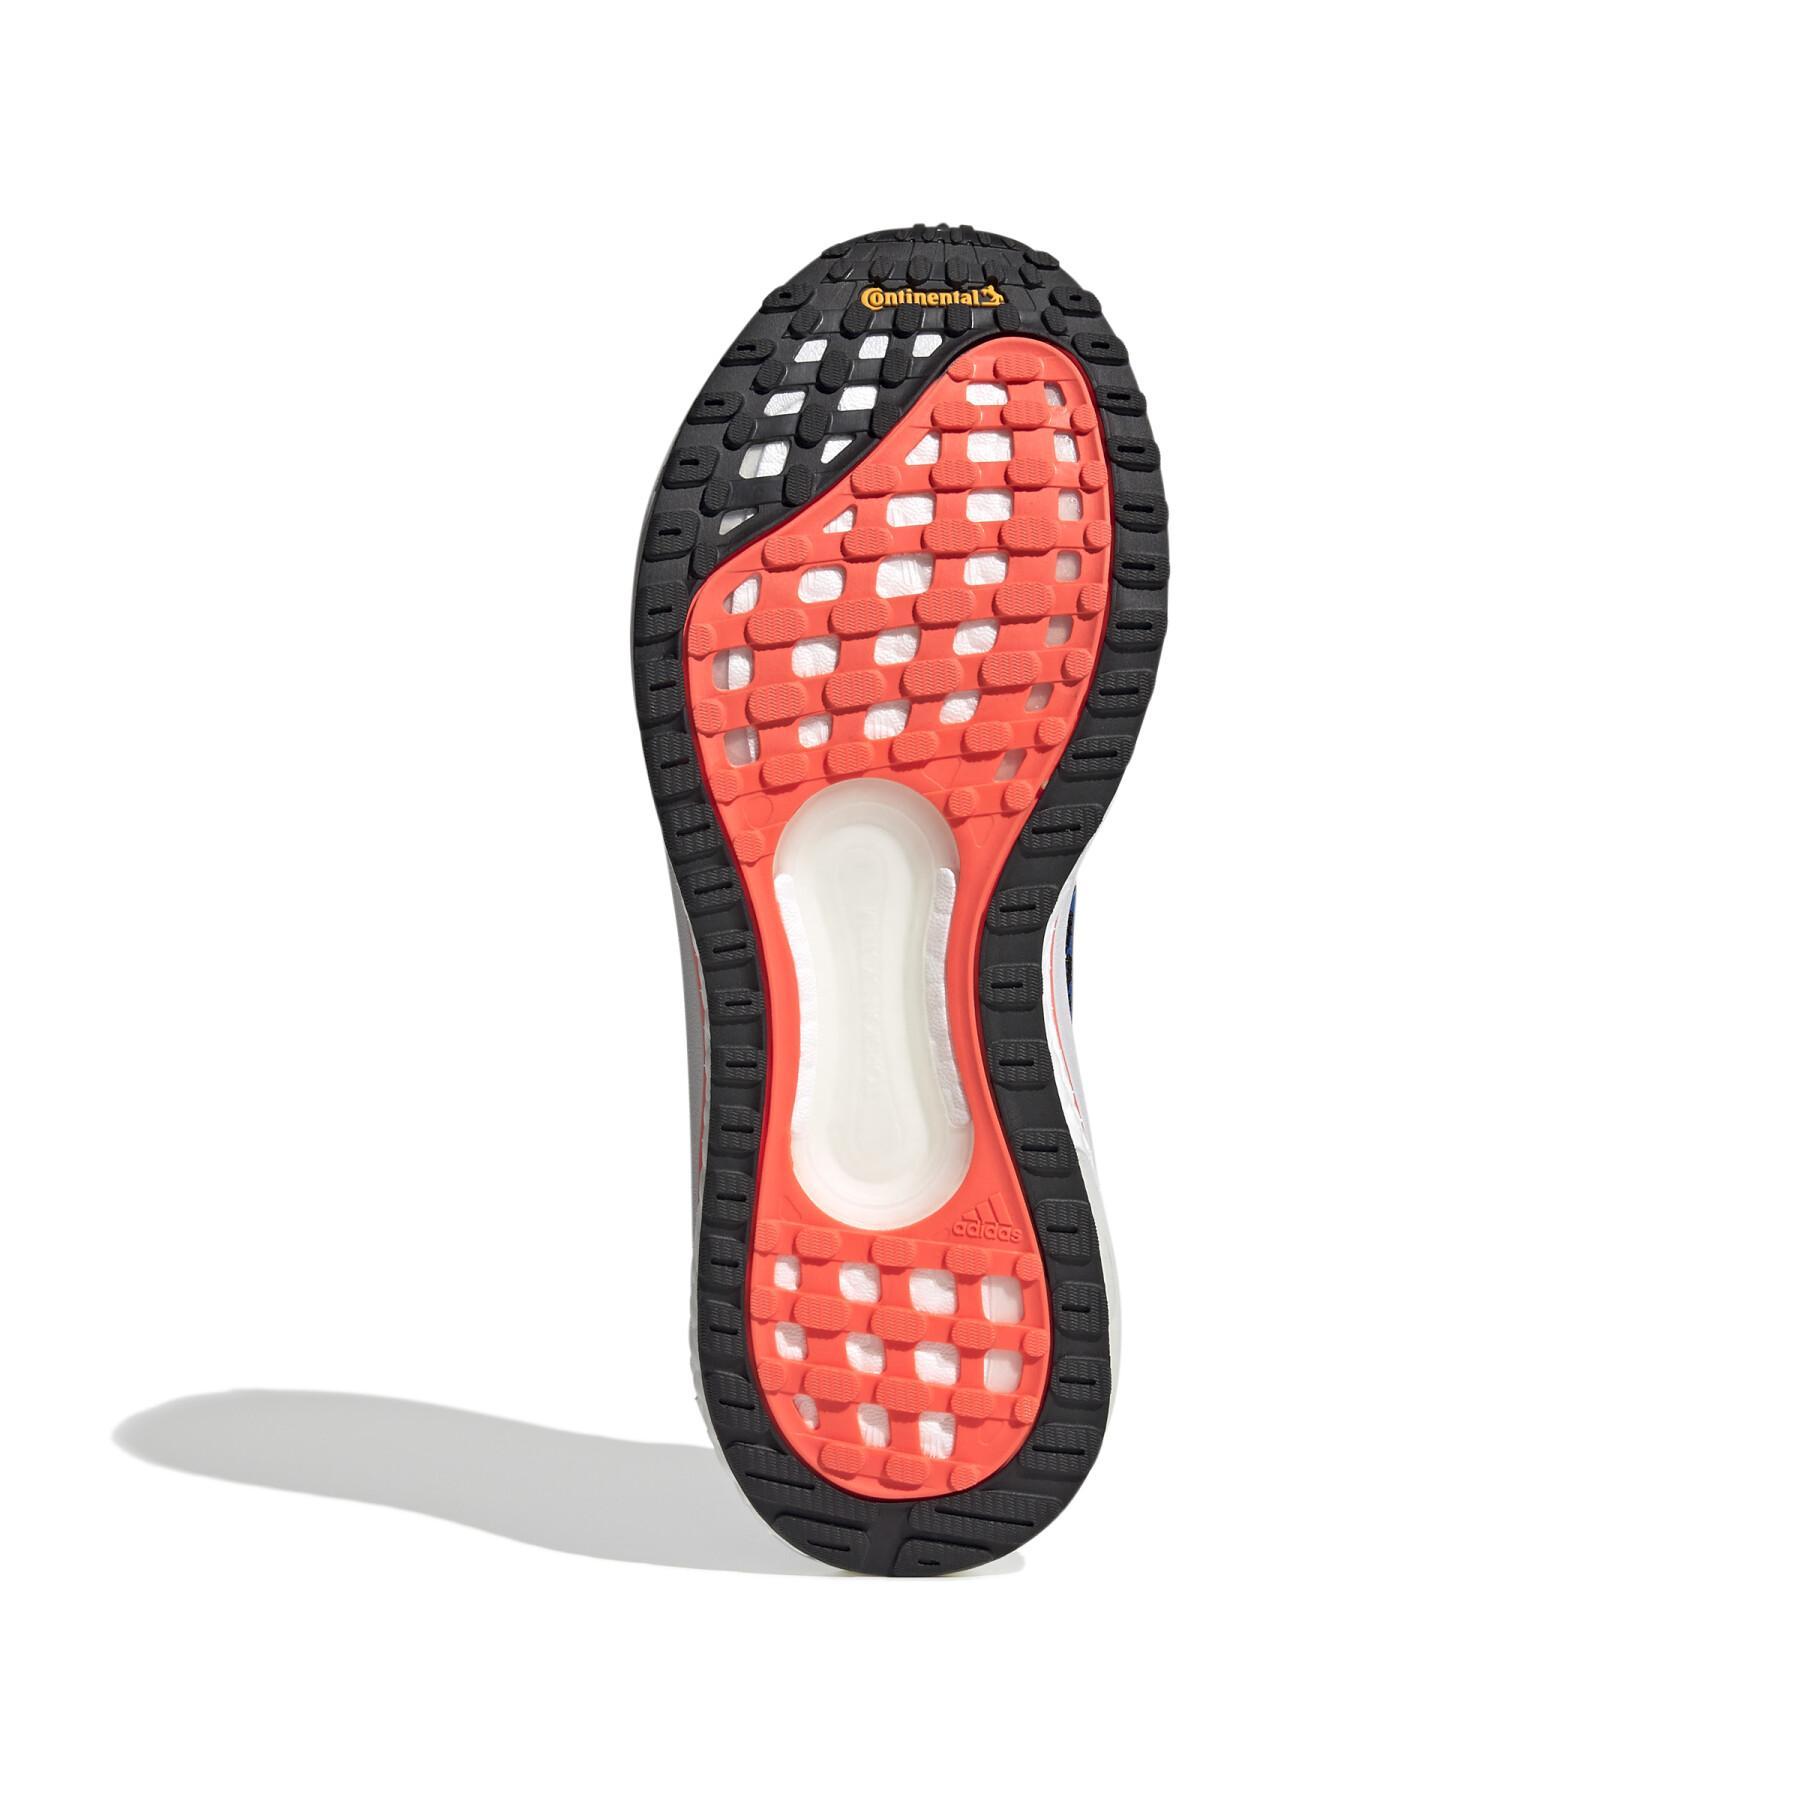 Schuhe adidas Solar Glide 3 M